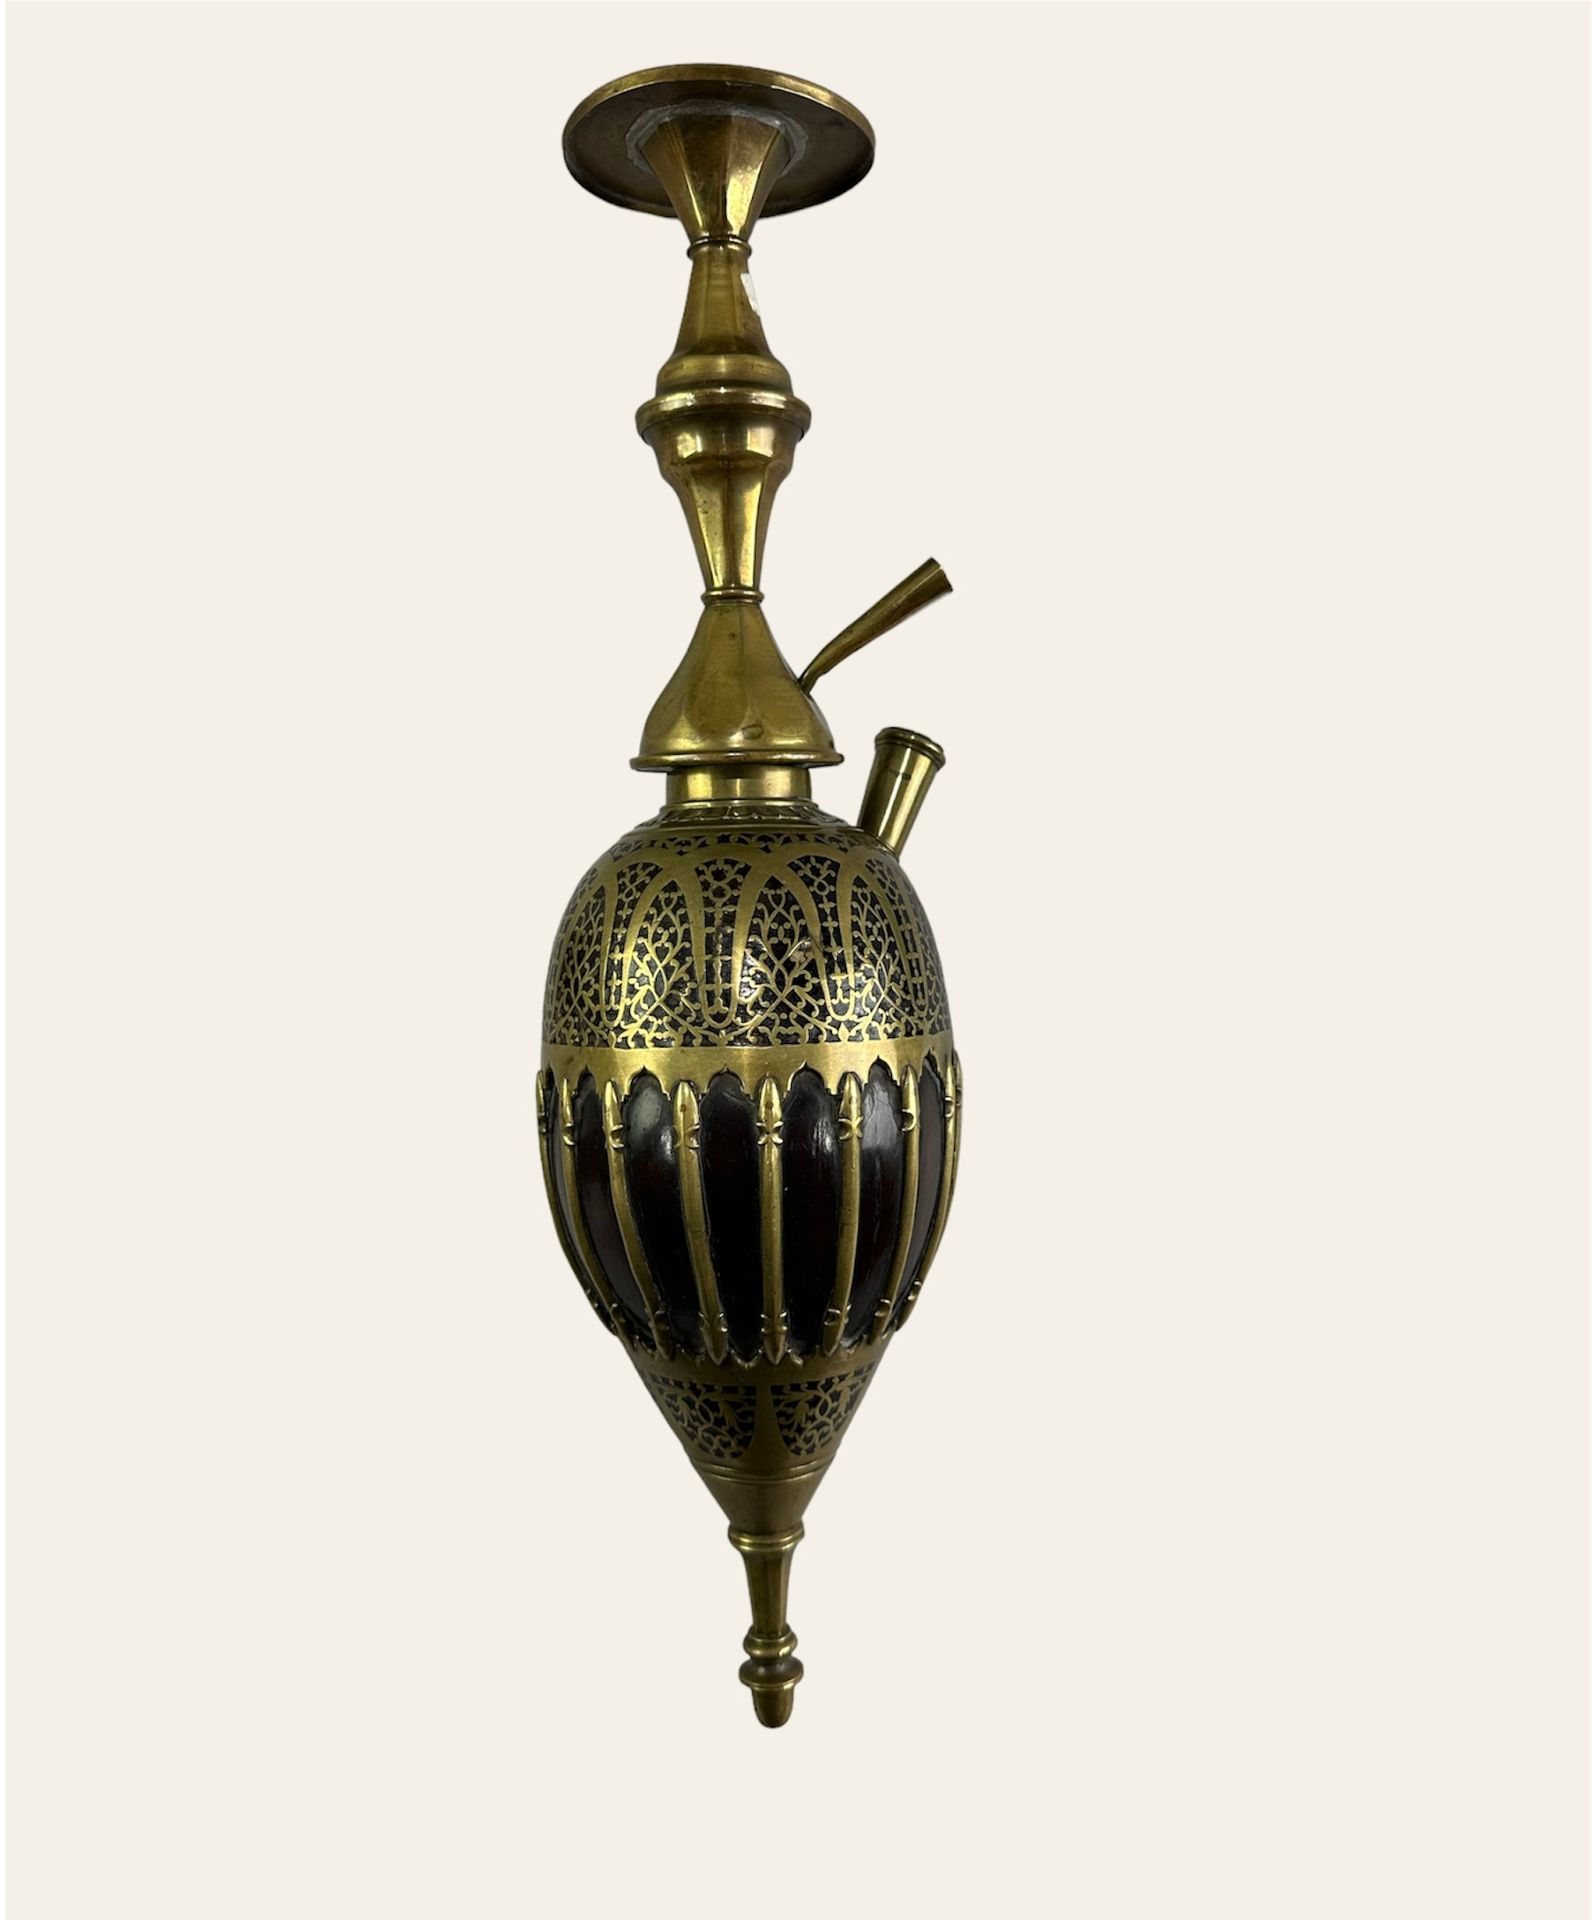 Null KALIAN en noix de coco. 

Iran, XIXème siècle 

h : 44 cm

(1878)